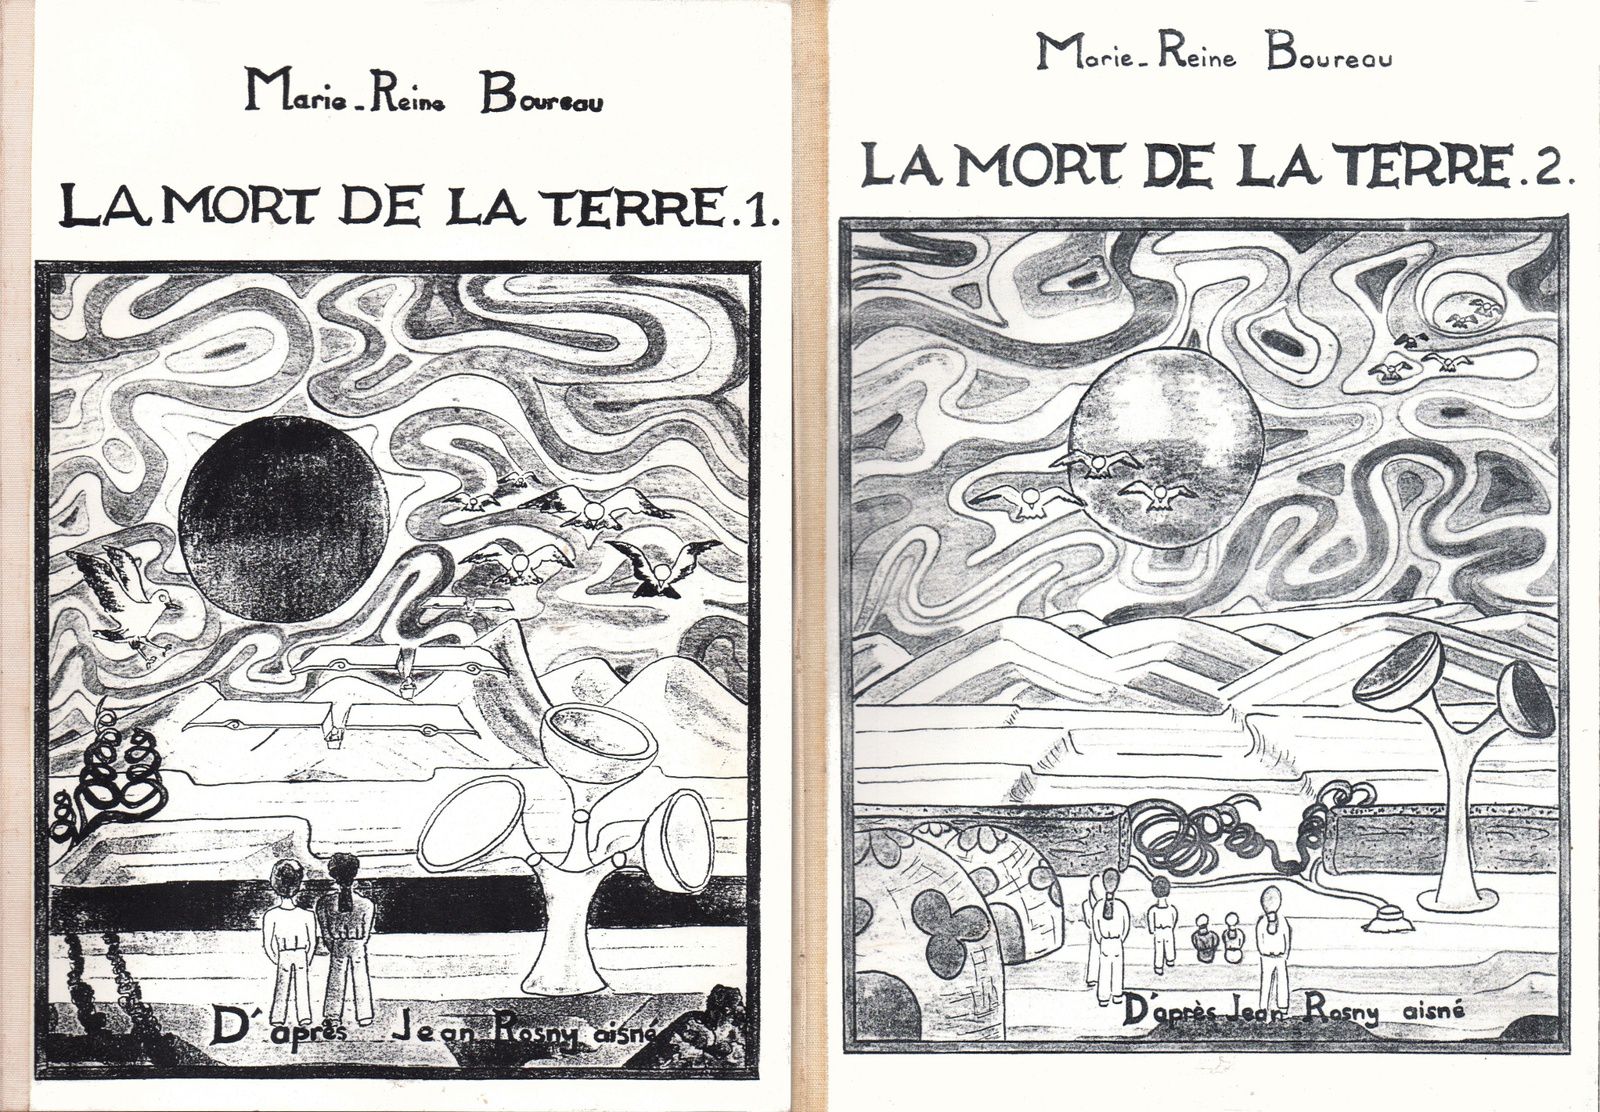 J.-H. Rosny aîné "La Mort de la Terre", adapt. par Marie-Reine Boureau (Atelier d'art graphique trianien - 1990/91)